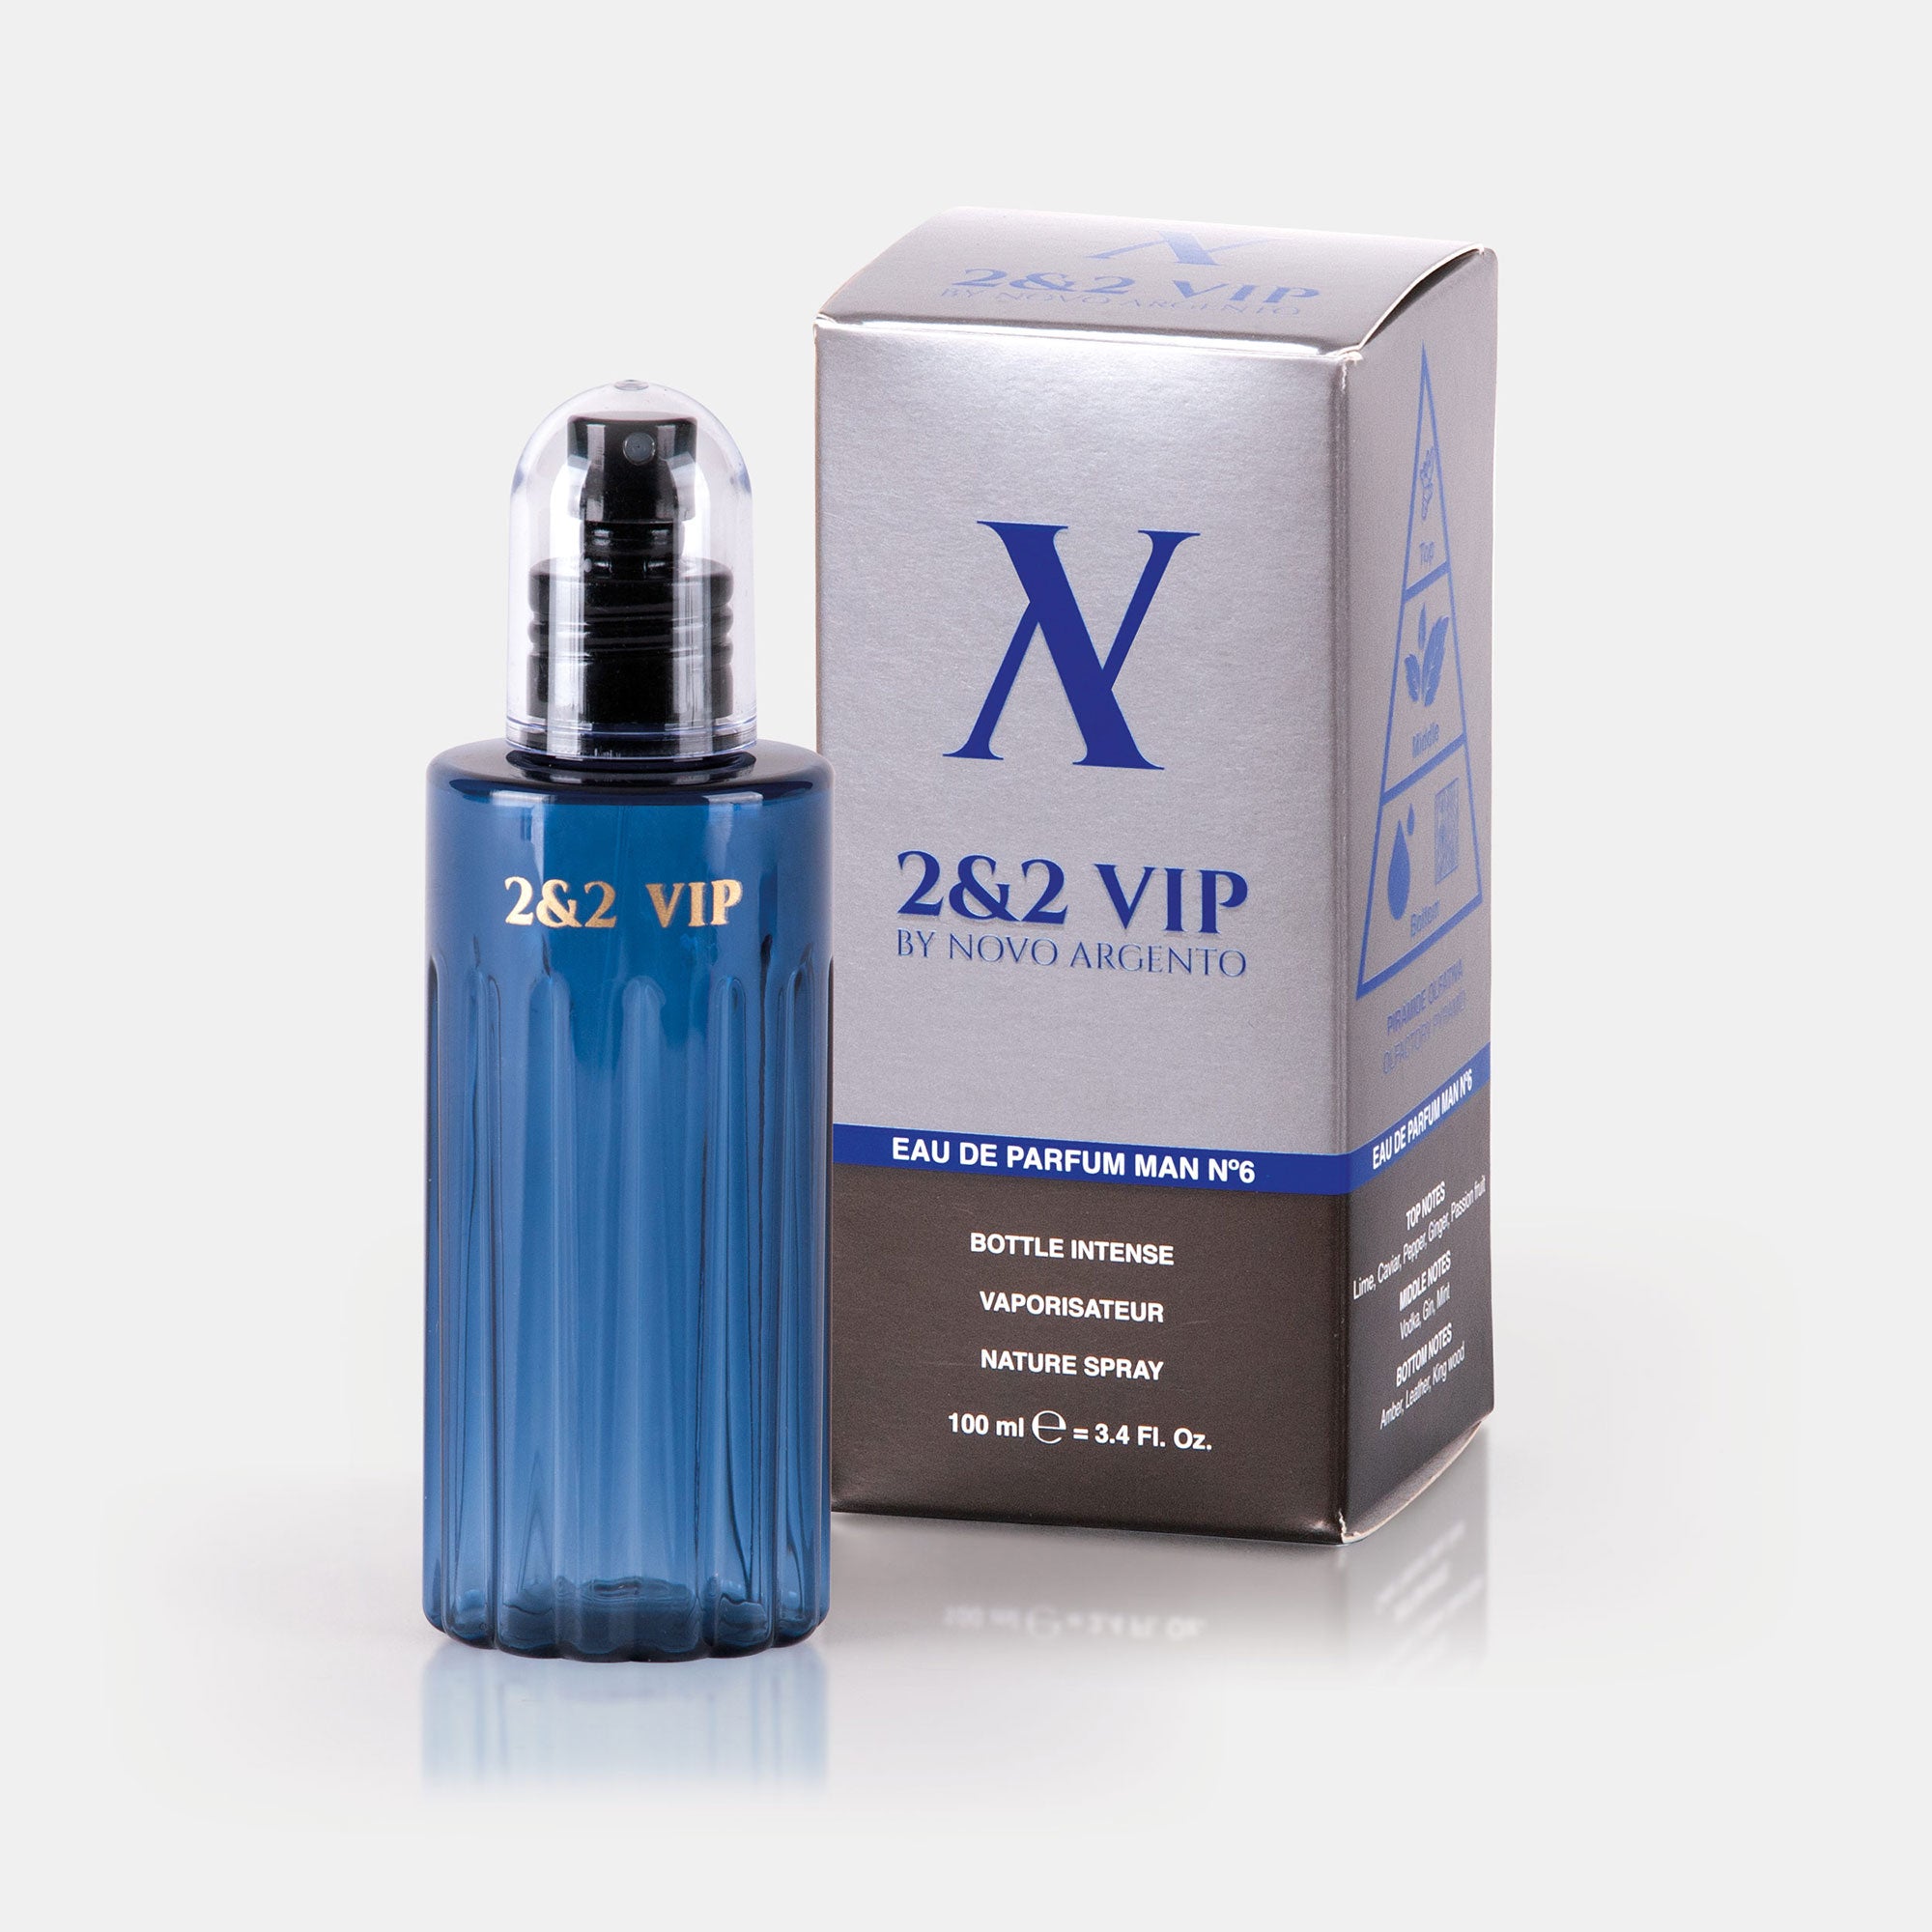 2&2 Vip - Perfumes premium para hombre